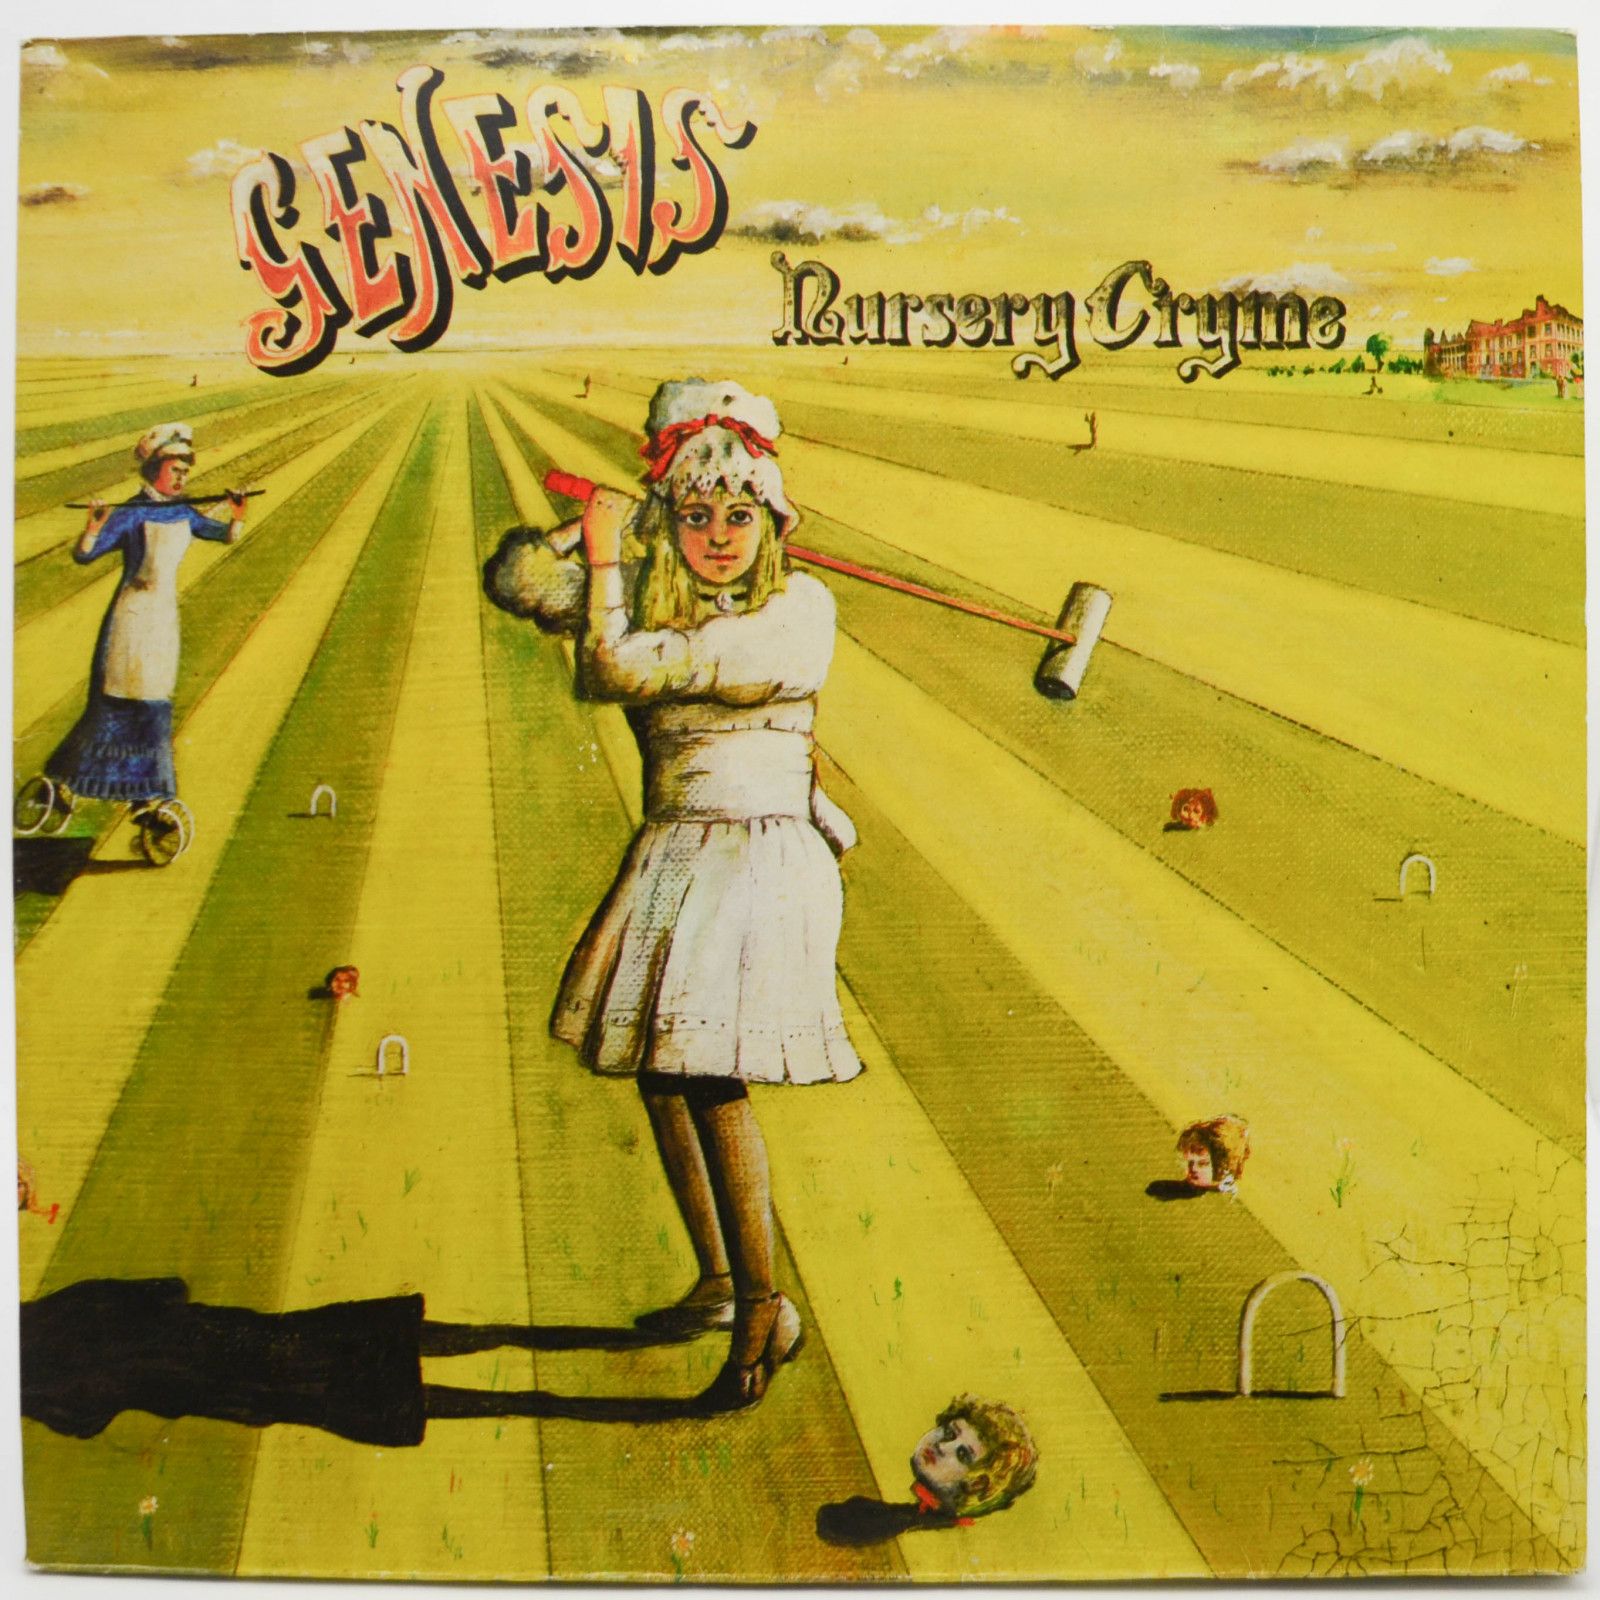 Genesis — Nursery Cryme, 1971